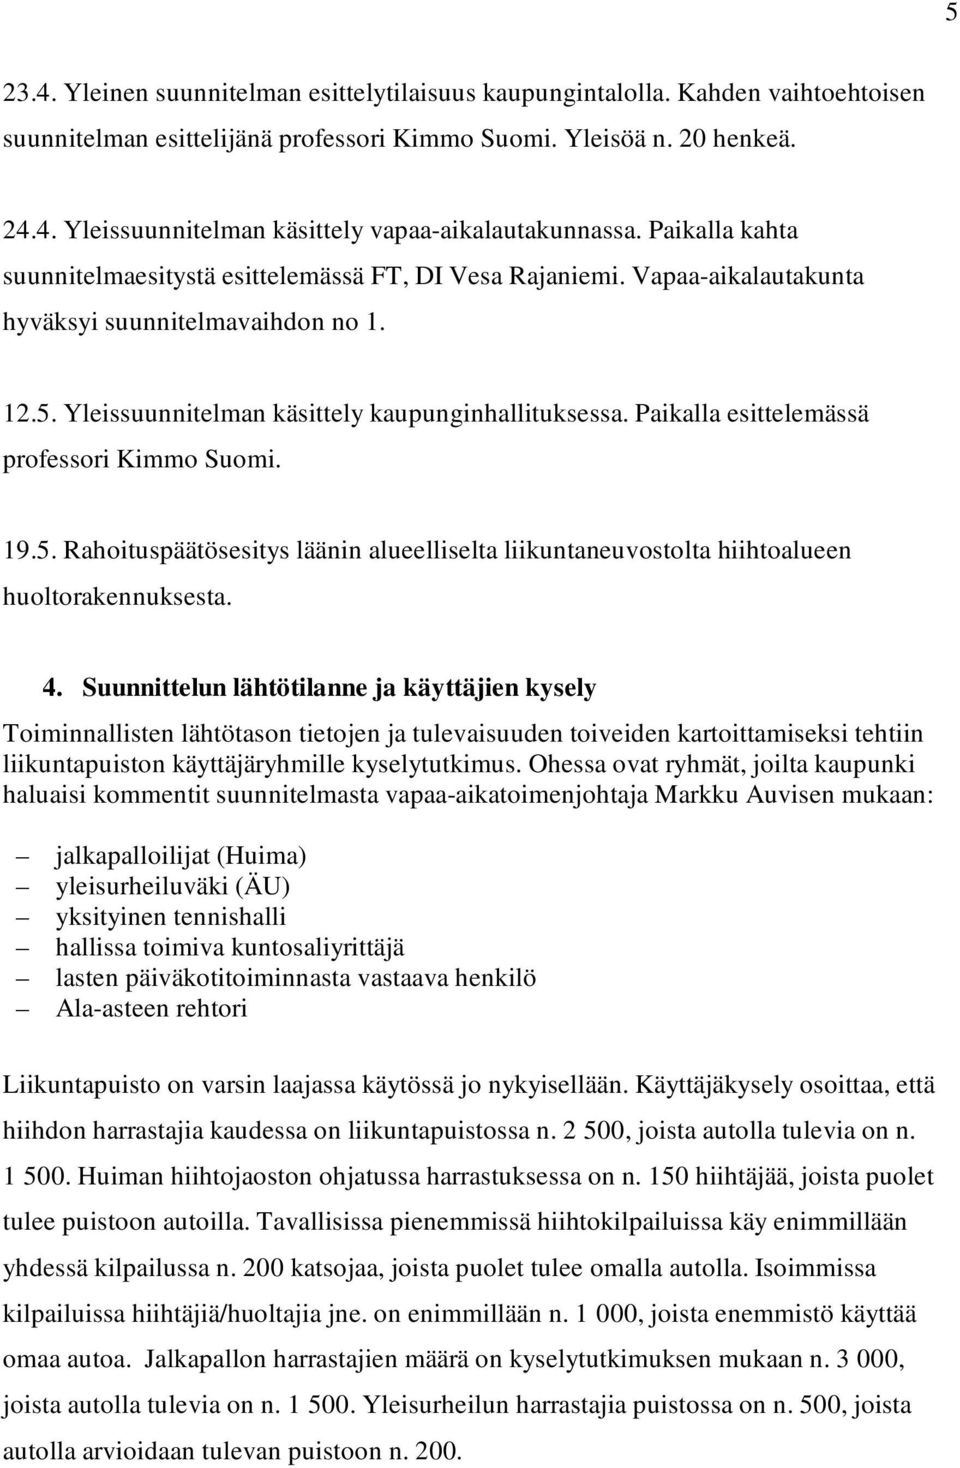 Paikalla esittelemässä professori Kimmo Suomi. 19.5. Rahoituspäätösesitys läänin alueelliselta liikuntaneuvostolta hiihtoalueen huoltorakennuksesta. 4.